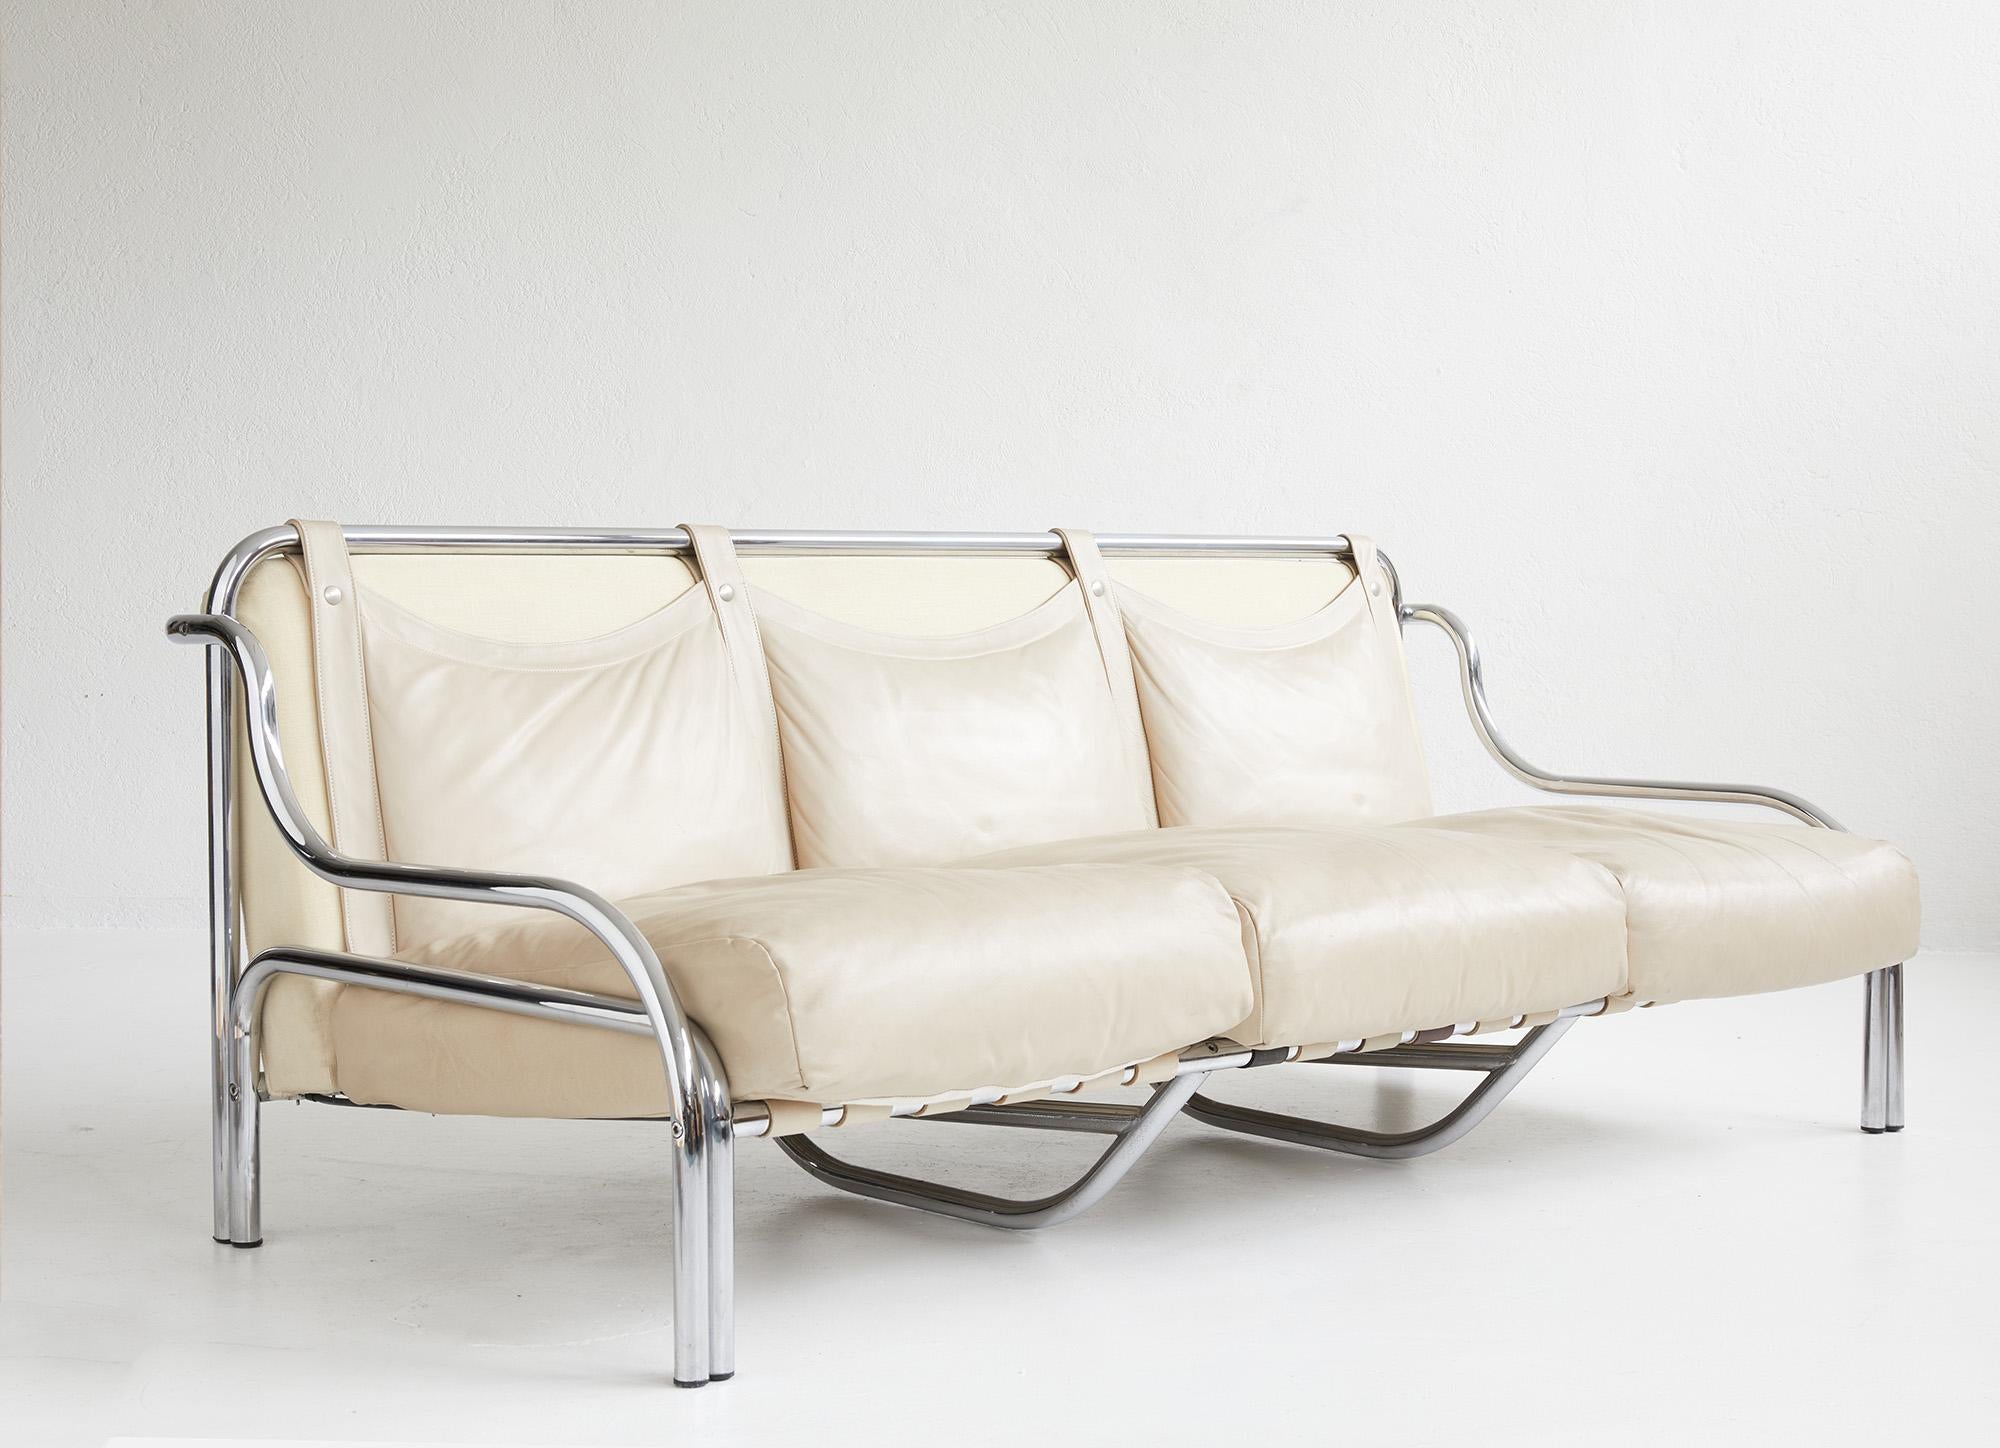 Dreisitziges Leders Sofa „Stringa“ von Gae Aulenti für Poltronova, Italien 1962

Das dreisitzige Ledersofa Stringa, 1962 von Gae Aulenti für Poltronova in Italien entworfen, ist eine Ikone unter den Möbeln. Mit seinem verchromten Metallrohrgestell